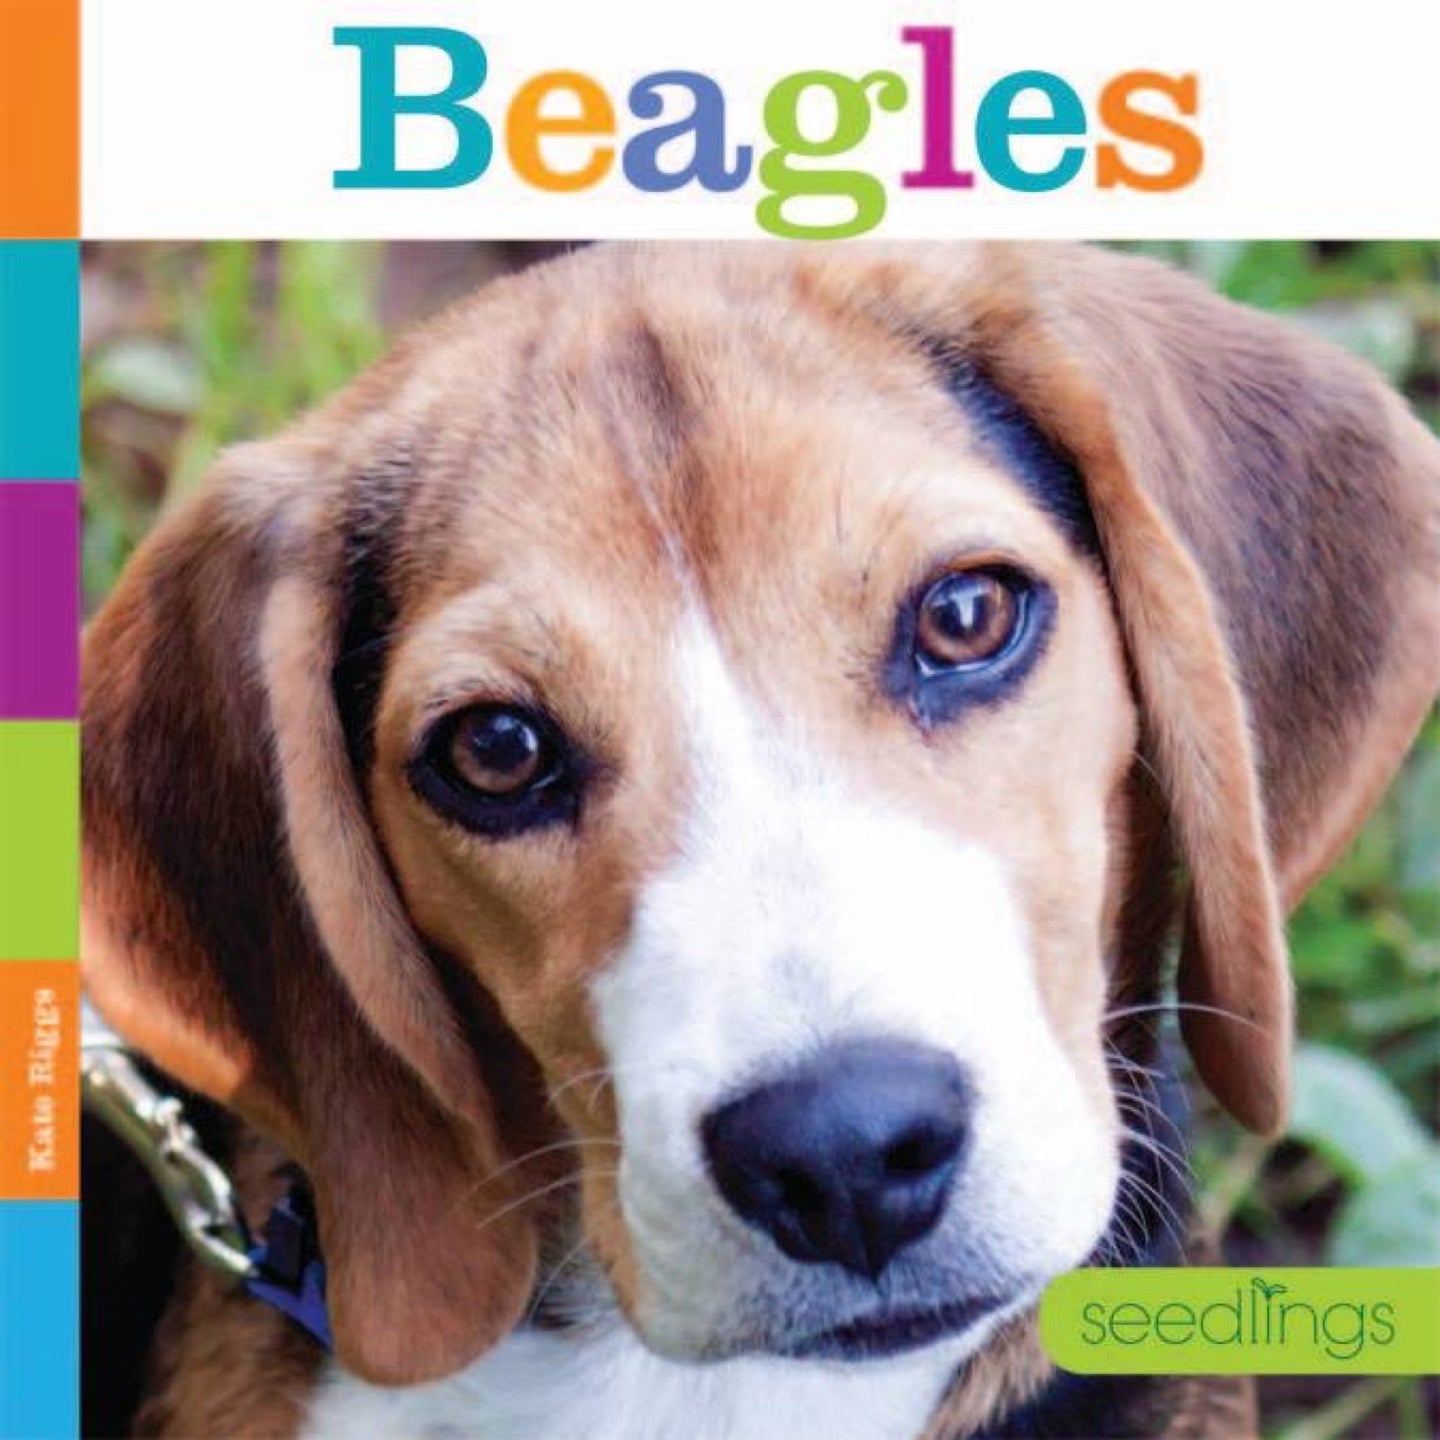 Seedlings: Beagles